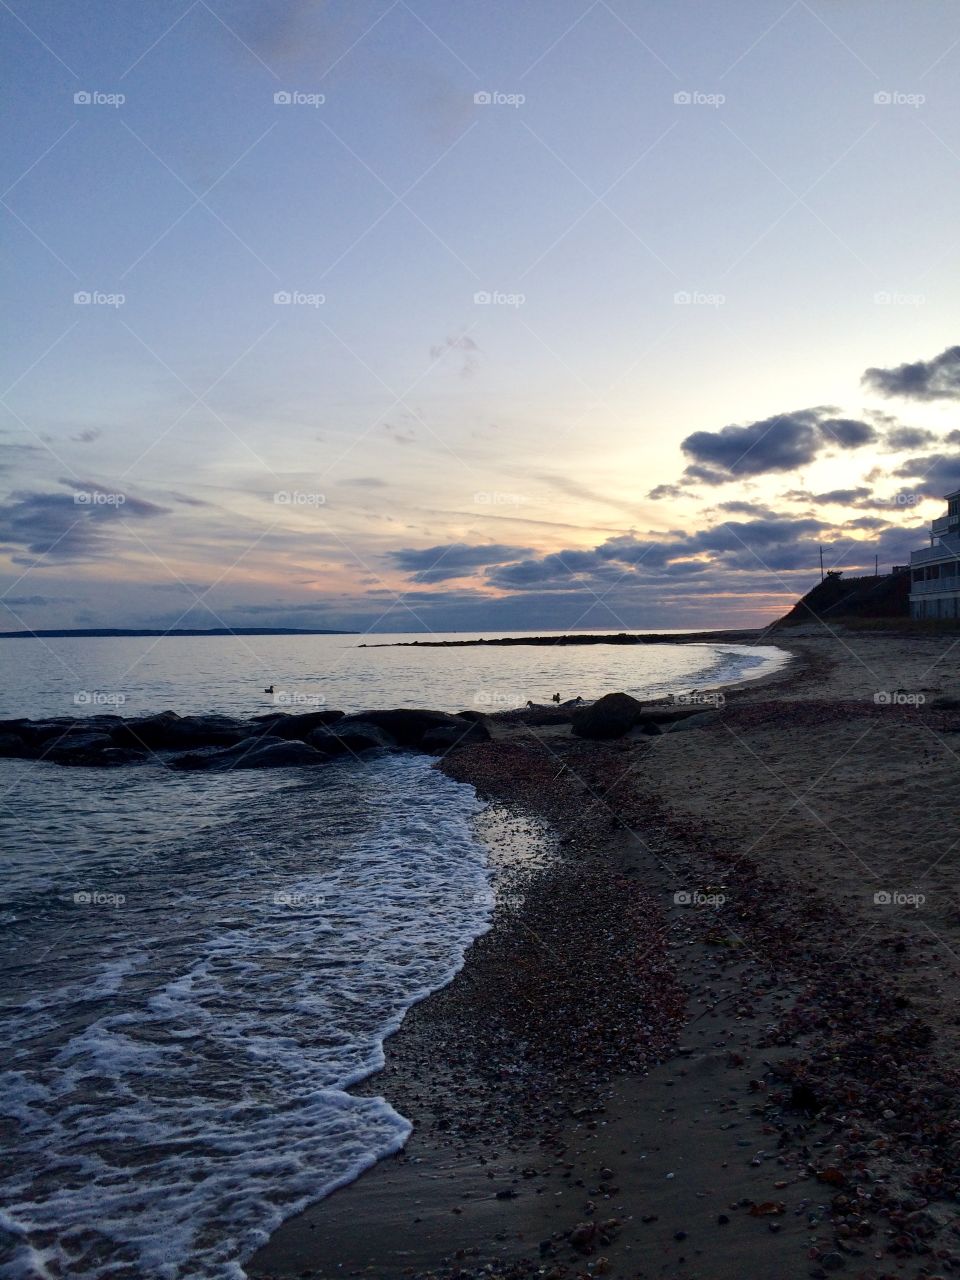 Falmouth Massachusetts Beach at Sunset 